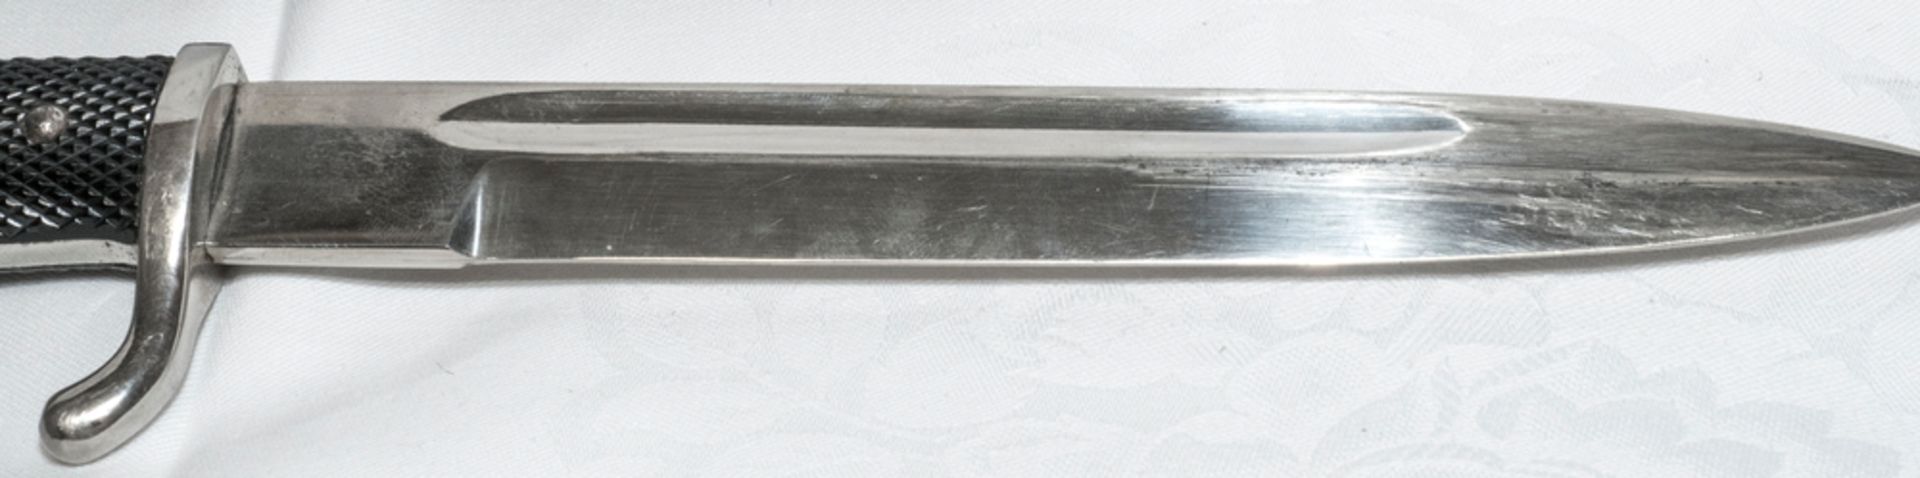 Puma Ausgehbajonett K98, Klingenlänge: ca. 20 cm. Metallscheide. Gesamtlänge: ca. 35 cm. - Bild 4 aus 4